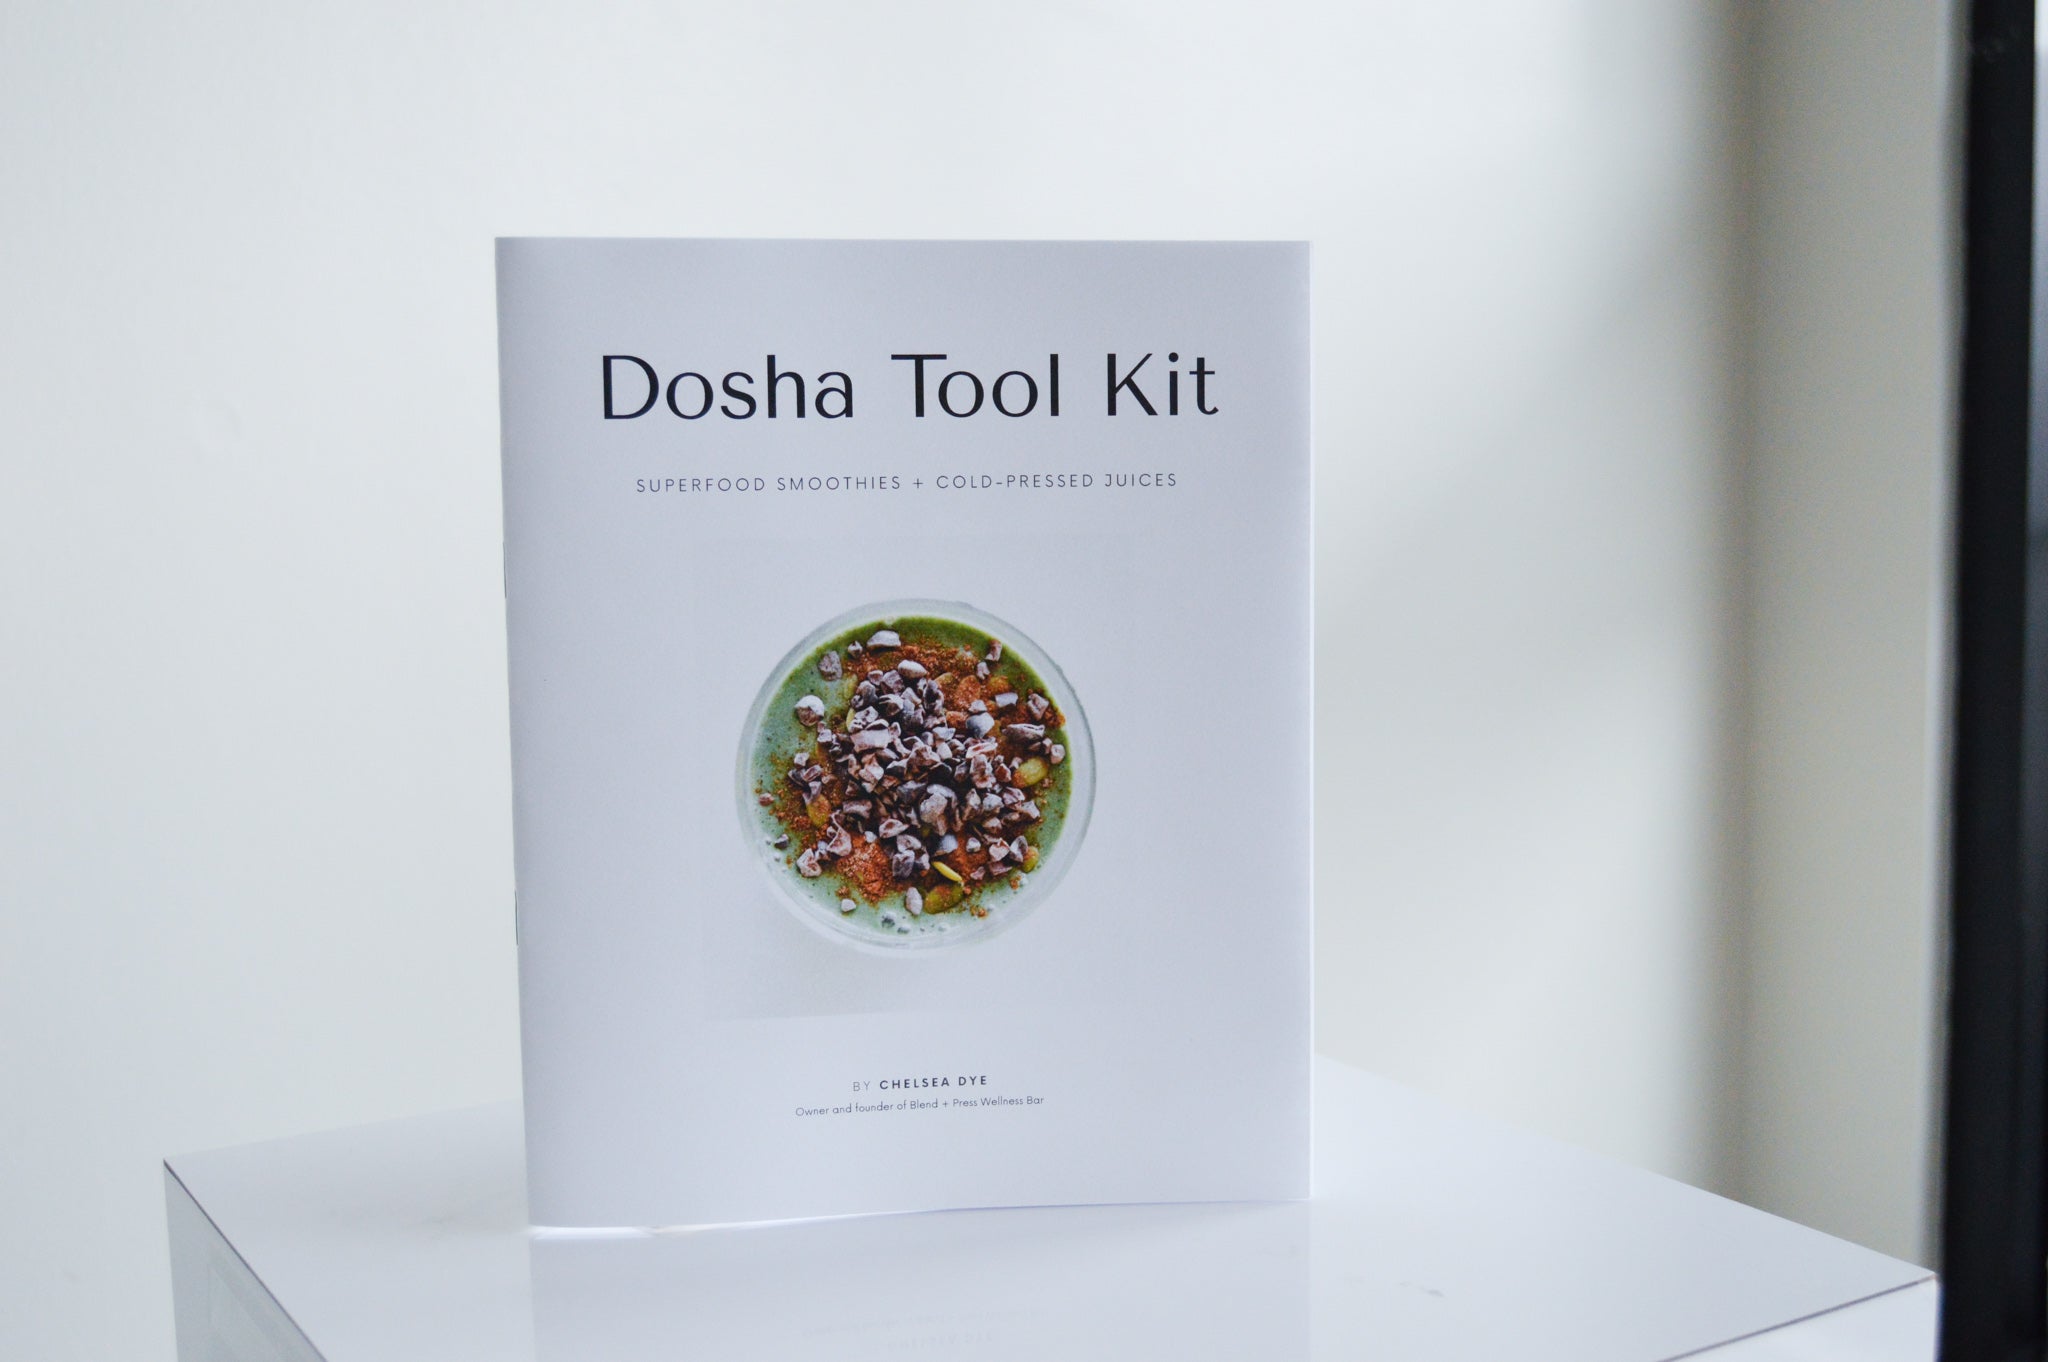 Dosha Tool Kit Volume 1 - Superfood Smoothie + Cold-Pressed Juices